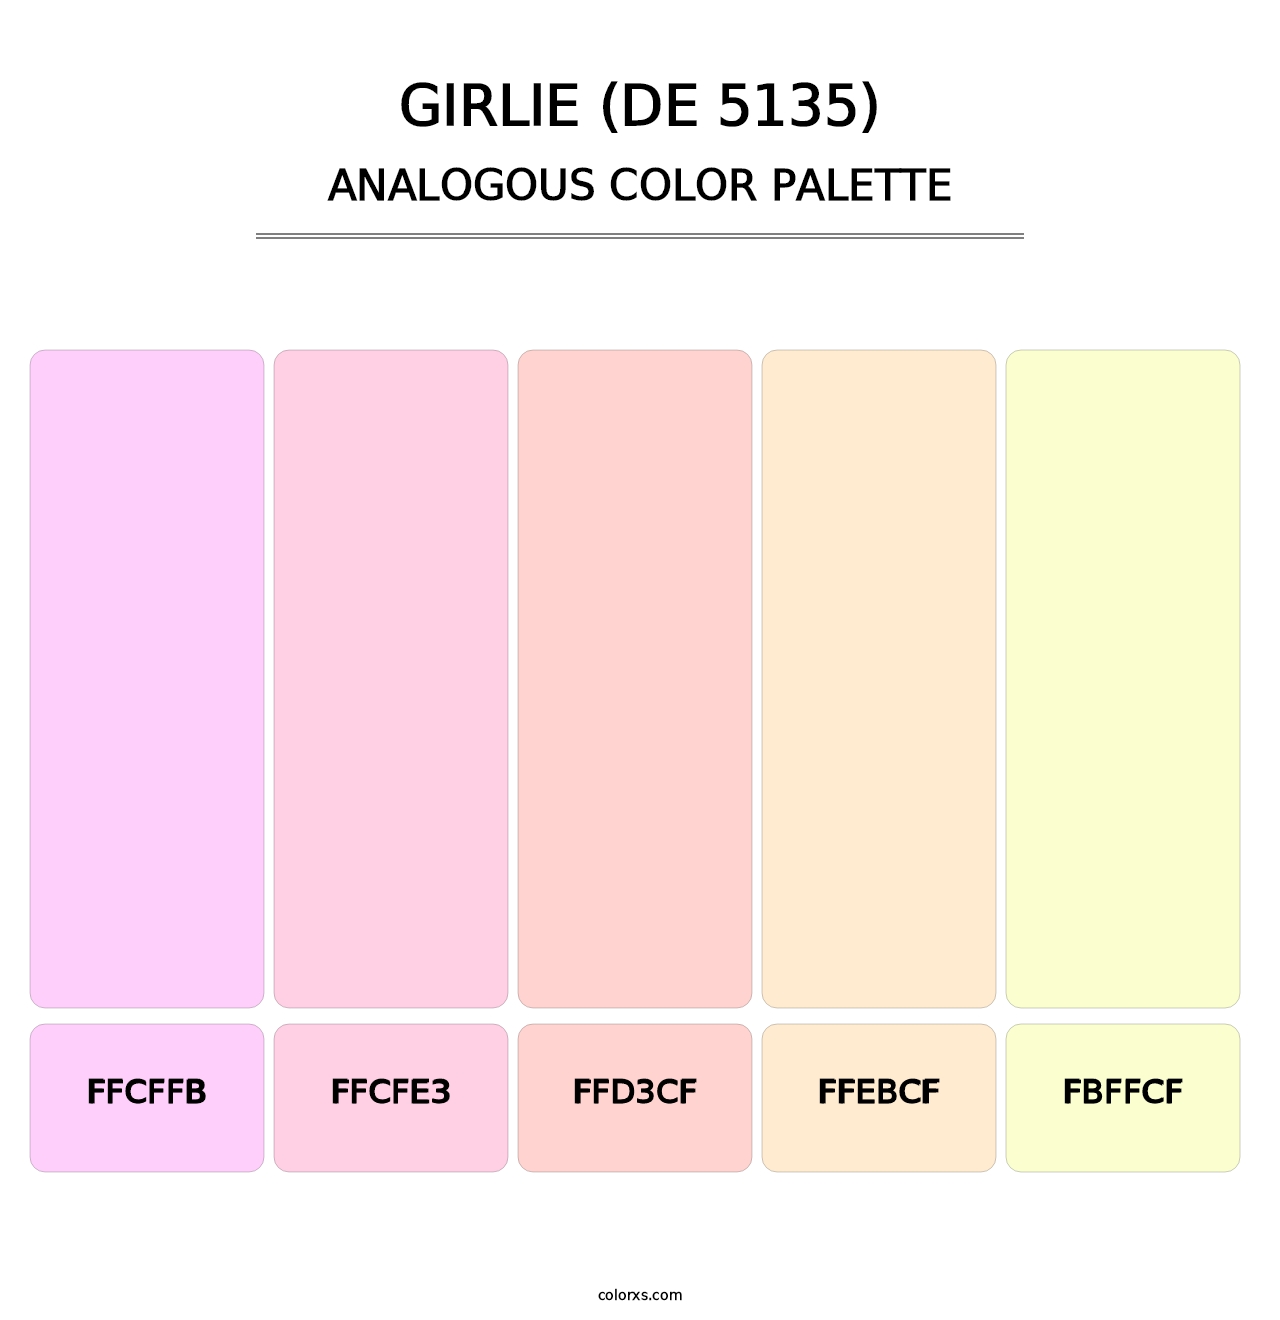 Girlie (DE 5135) - Analogous Color Palette